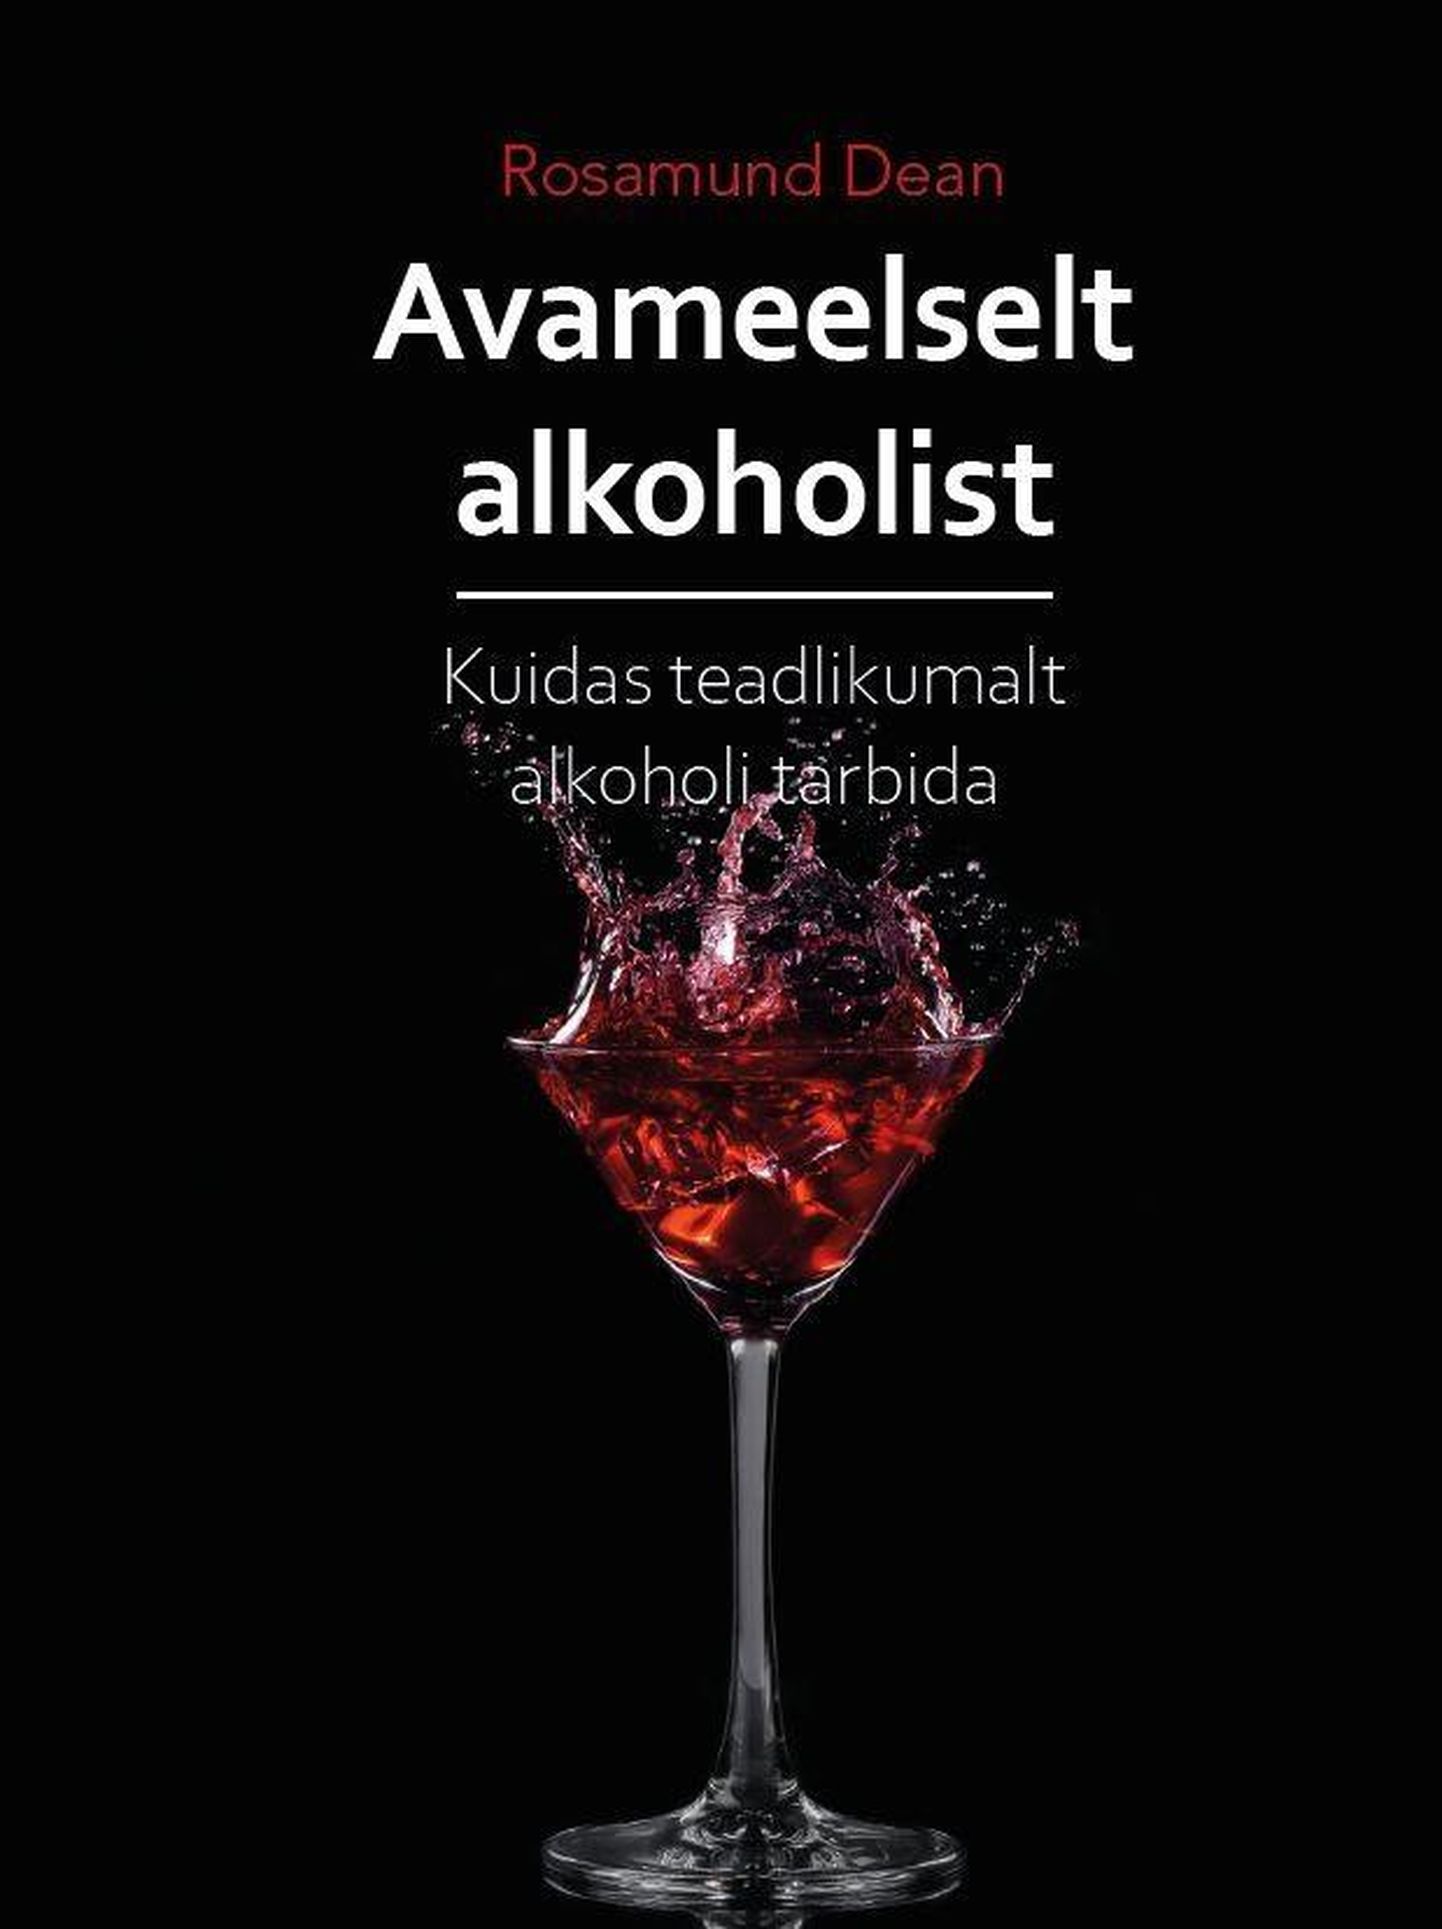 Rosamund Dean, "Avameelselt alkoholist. Kuidas teadlikumalt alkoholi tarbida".